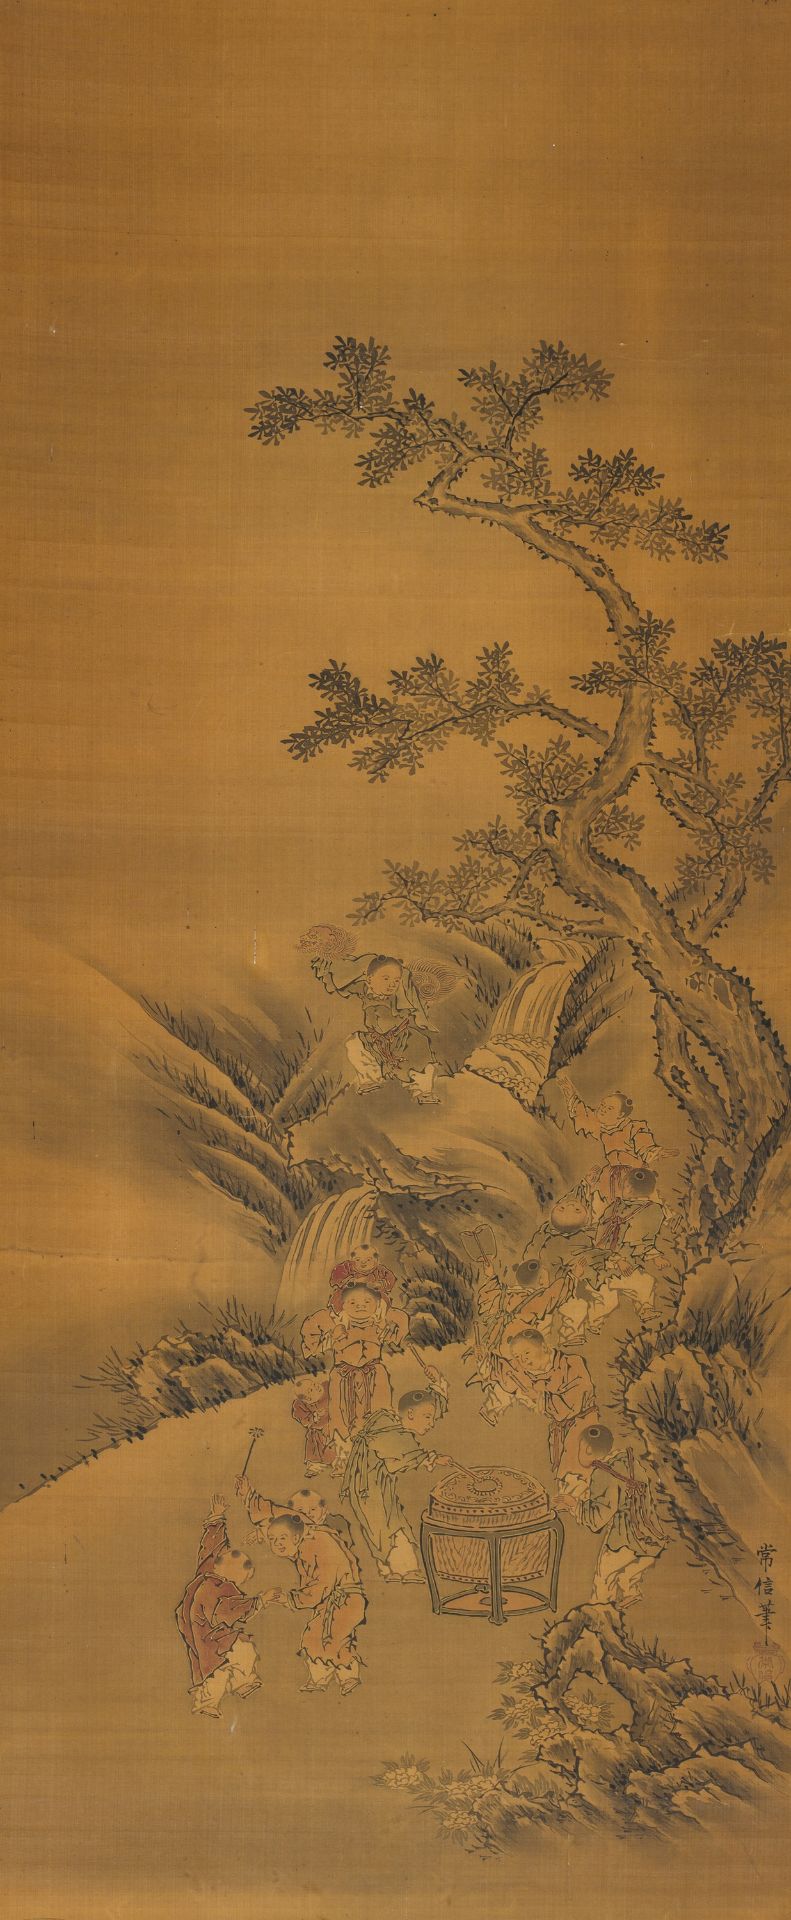 KANO TSUNENOBU (1636-1713): 'KARAKO BOYS AT PLAY' - Image 2 of 6